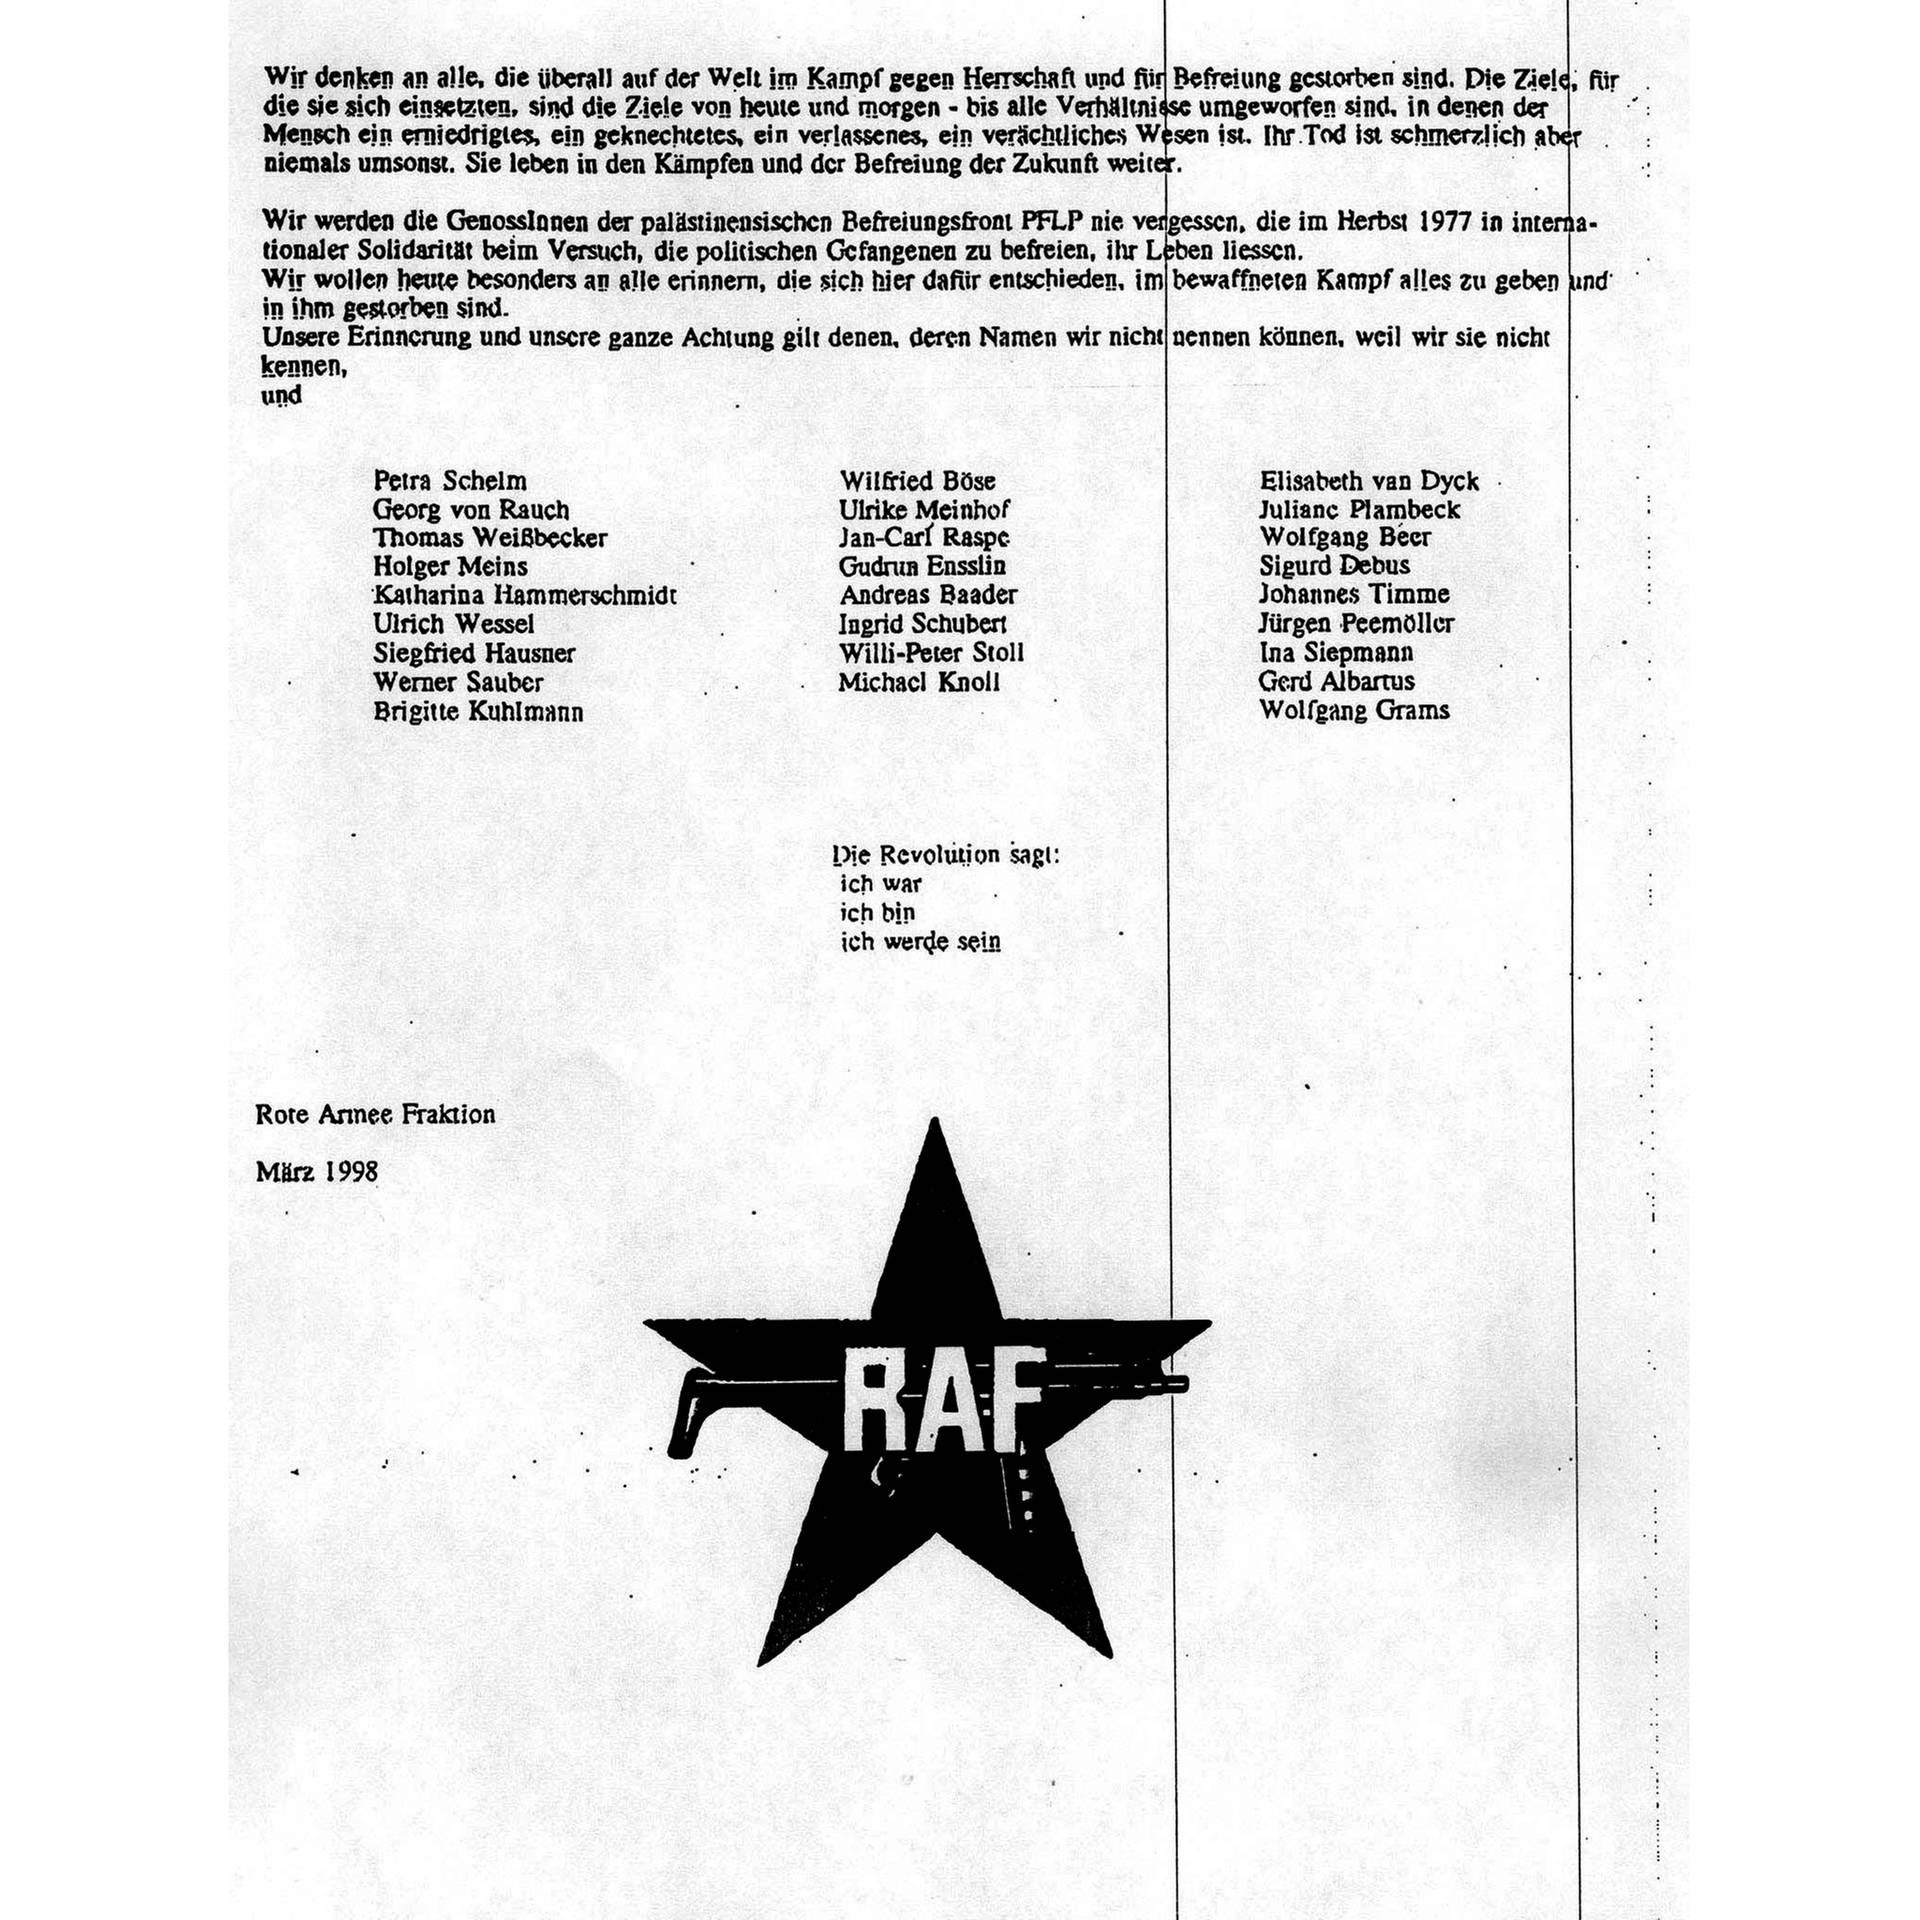 RAF gibt Auflösung bekannt | 20.4.1998